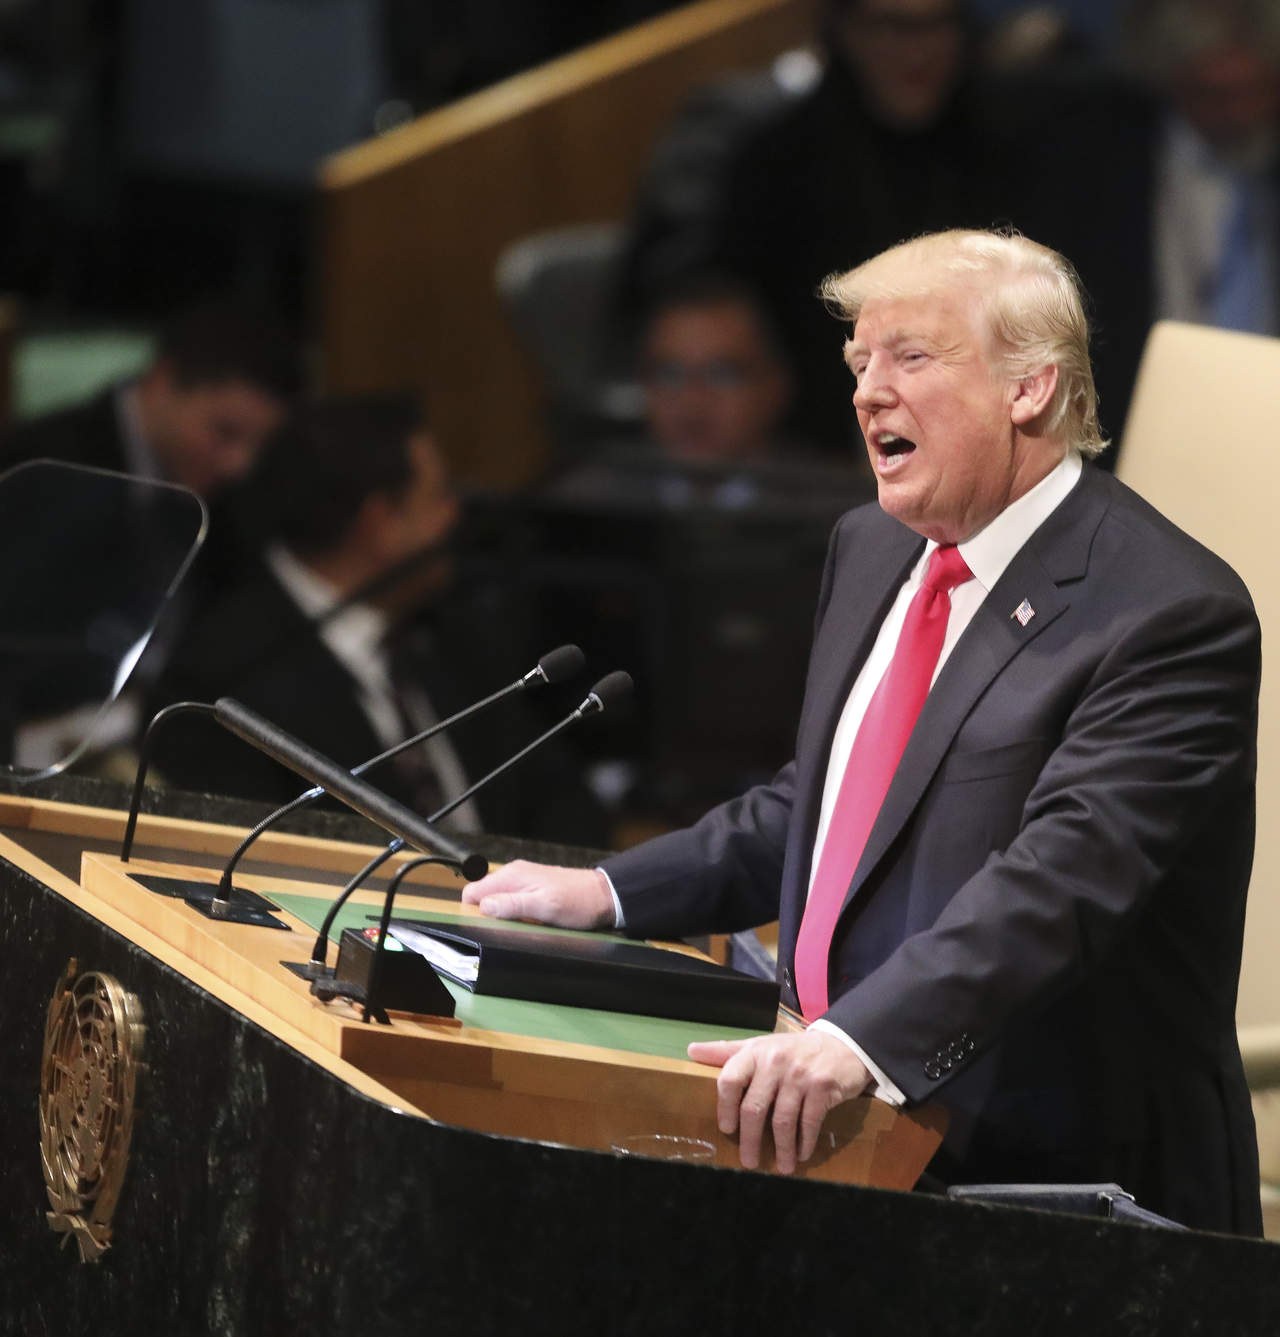 'Me gustaría agradecer al líder Kim por su valor y por los pasos que está dando, pero todavía queda mucho por hacer. Las sanciones seguirán vigentes hasta que consigamos la desnuclearización', expresó hoy Trump. (AP)